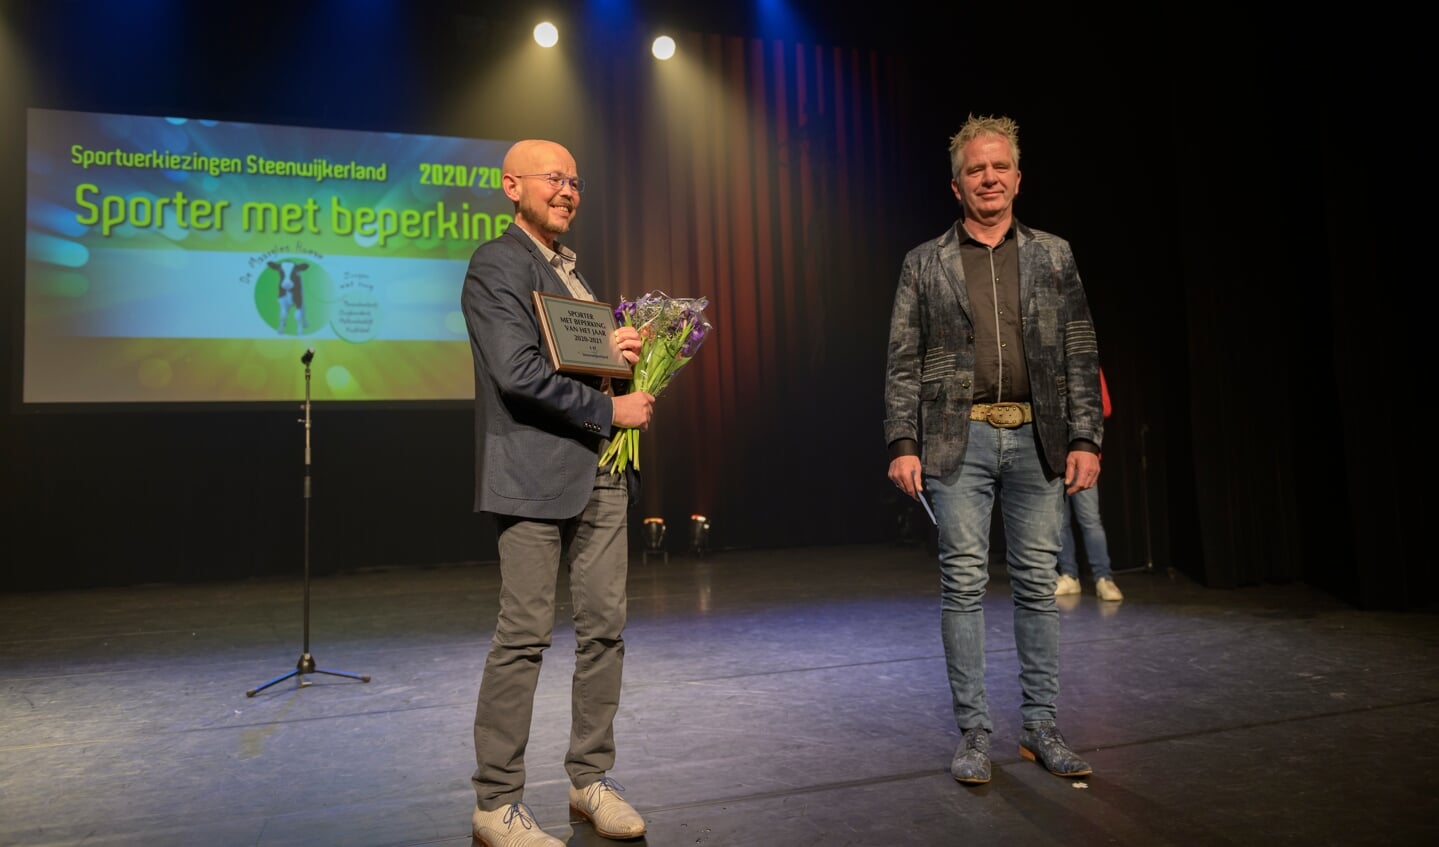 Sporter met een beperking: Patrick Hoogendijk (links) uit Steenwijk en Lu Nijk